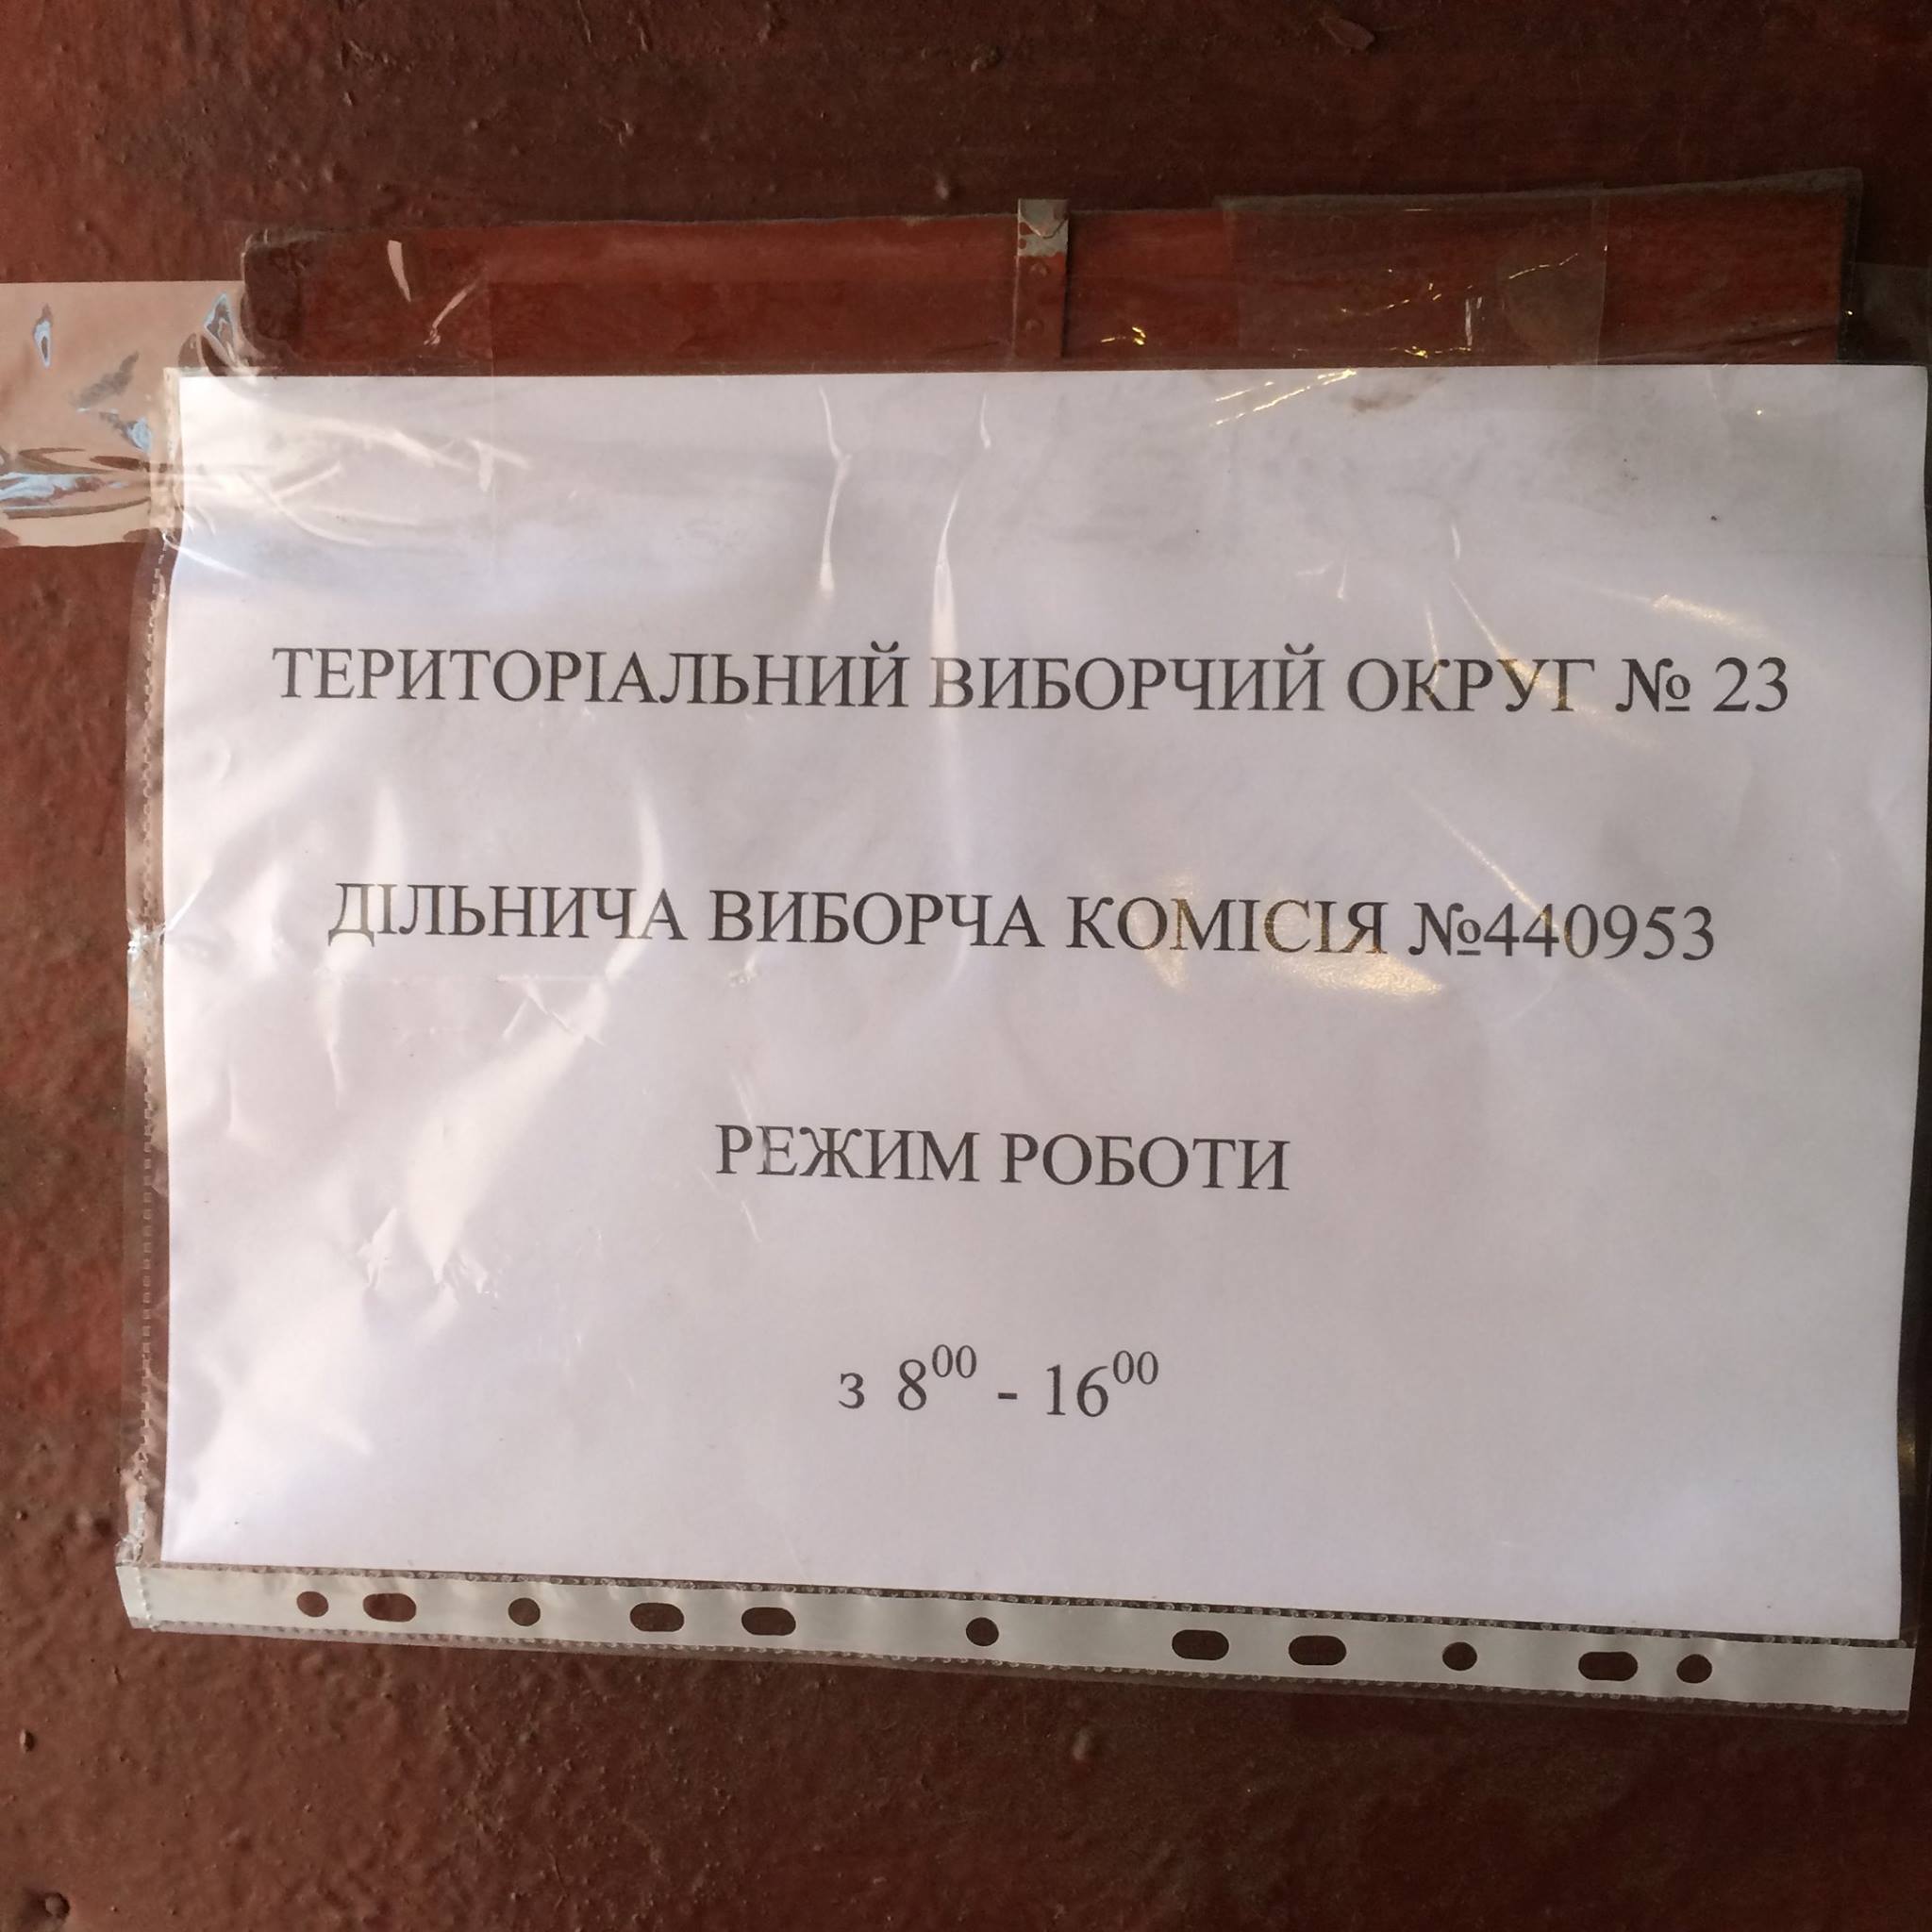 Тука побачив "скотиняче" відношення до робітників дільниць на Луганщині  - фото 4